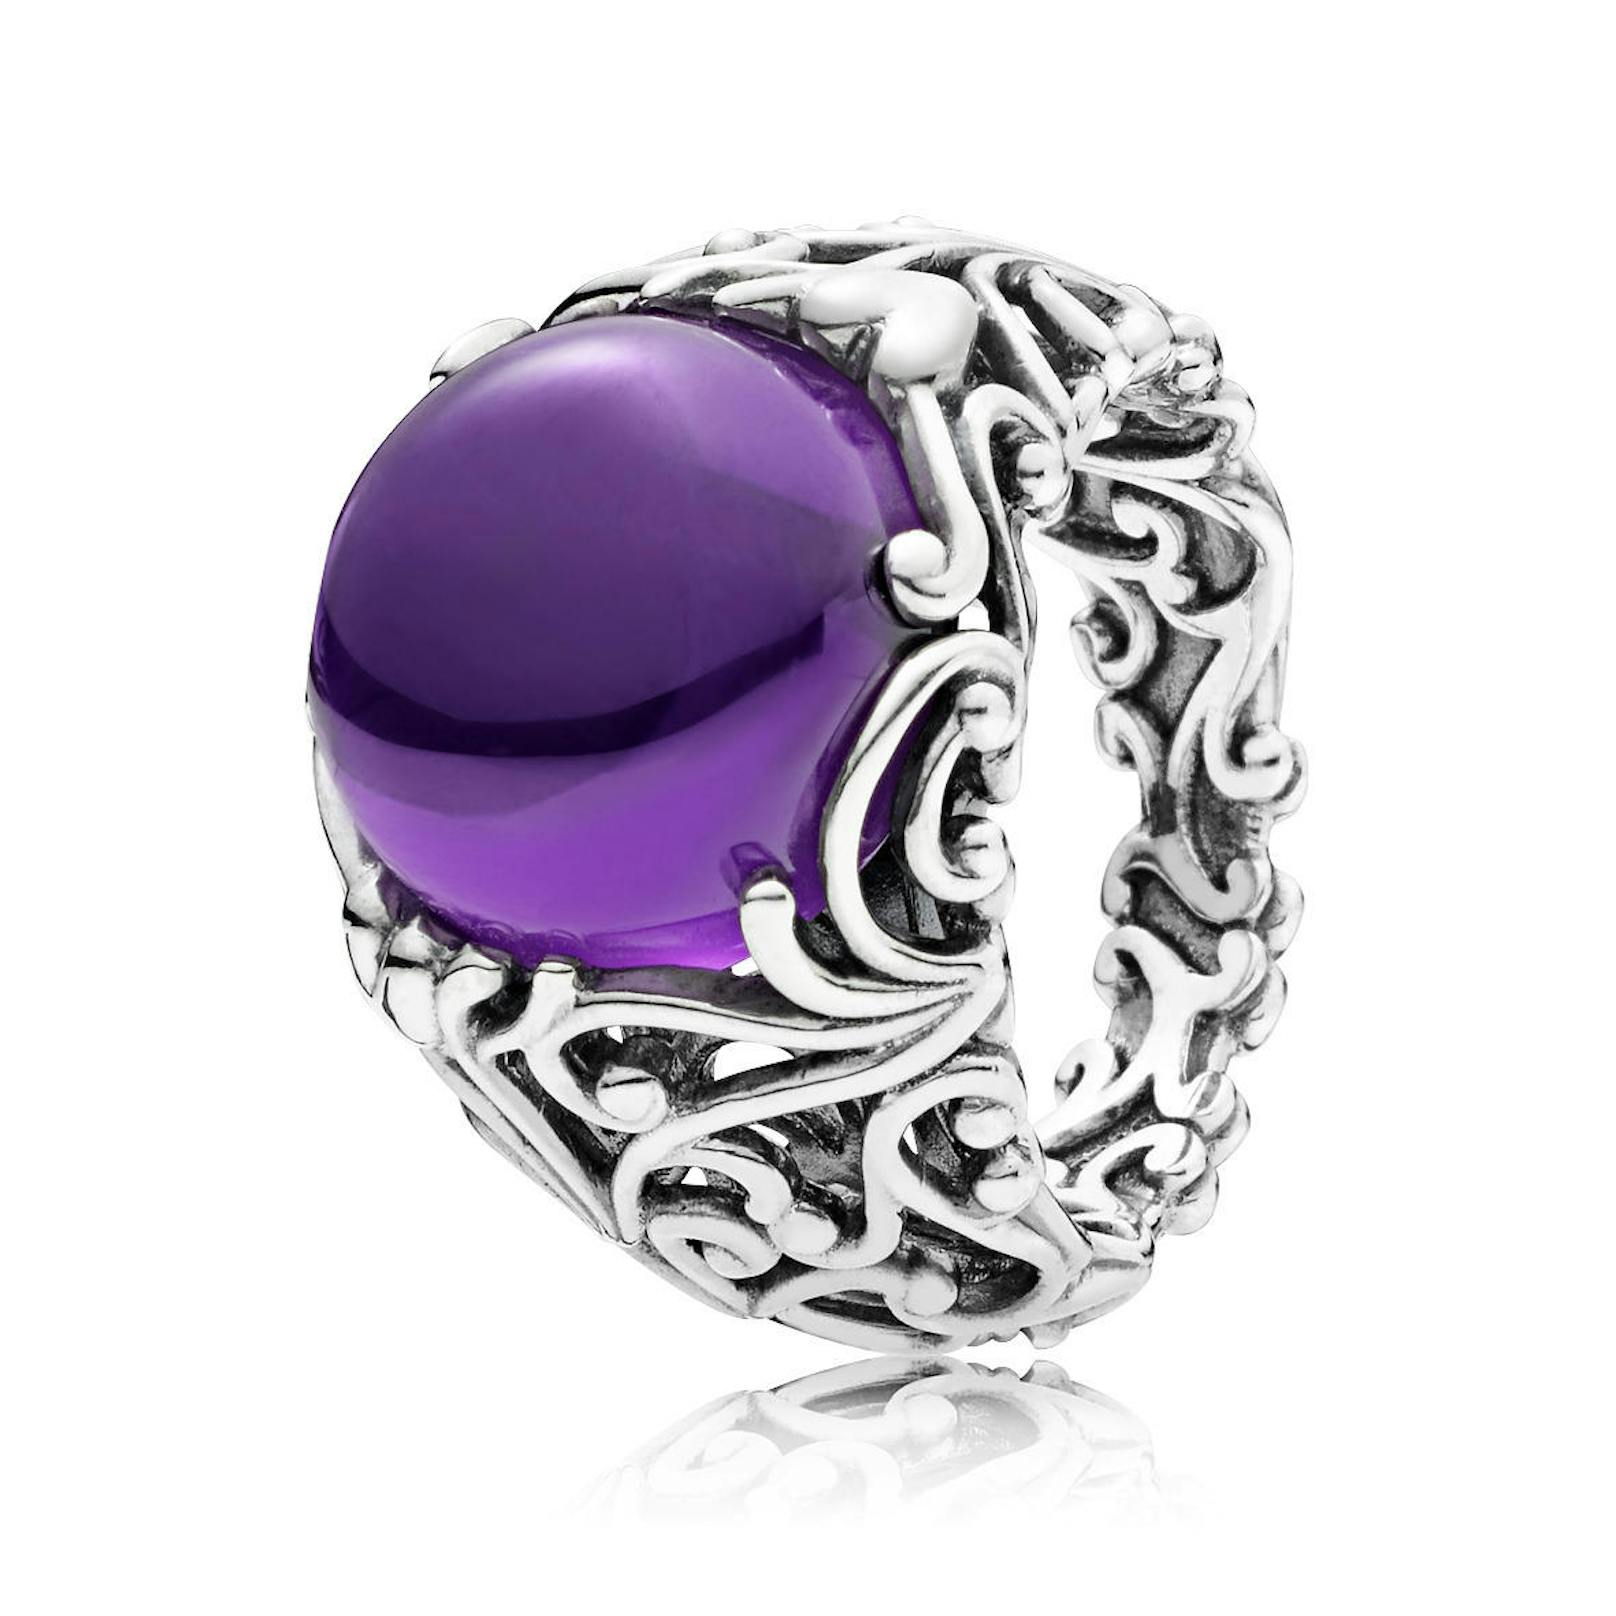 Sterling-Silber-Ring mit violettem Cubic Zirkonia um 99 Euro.